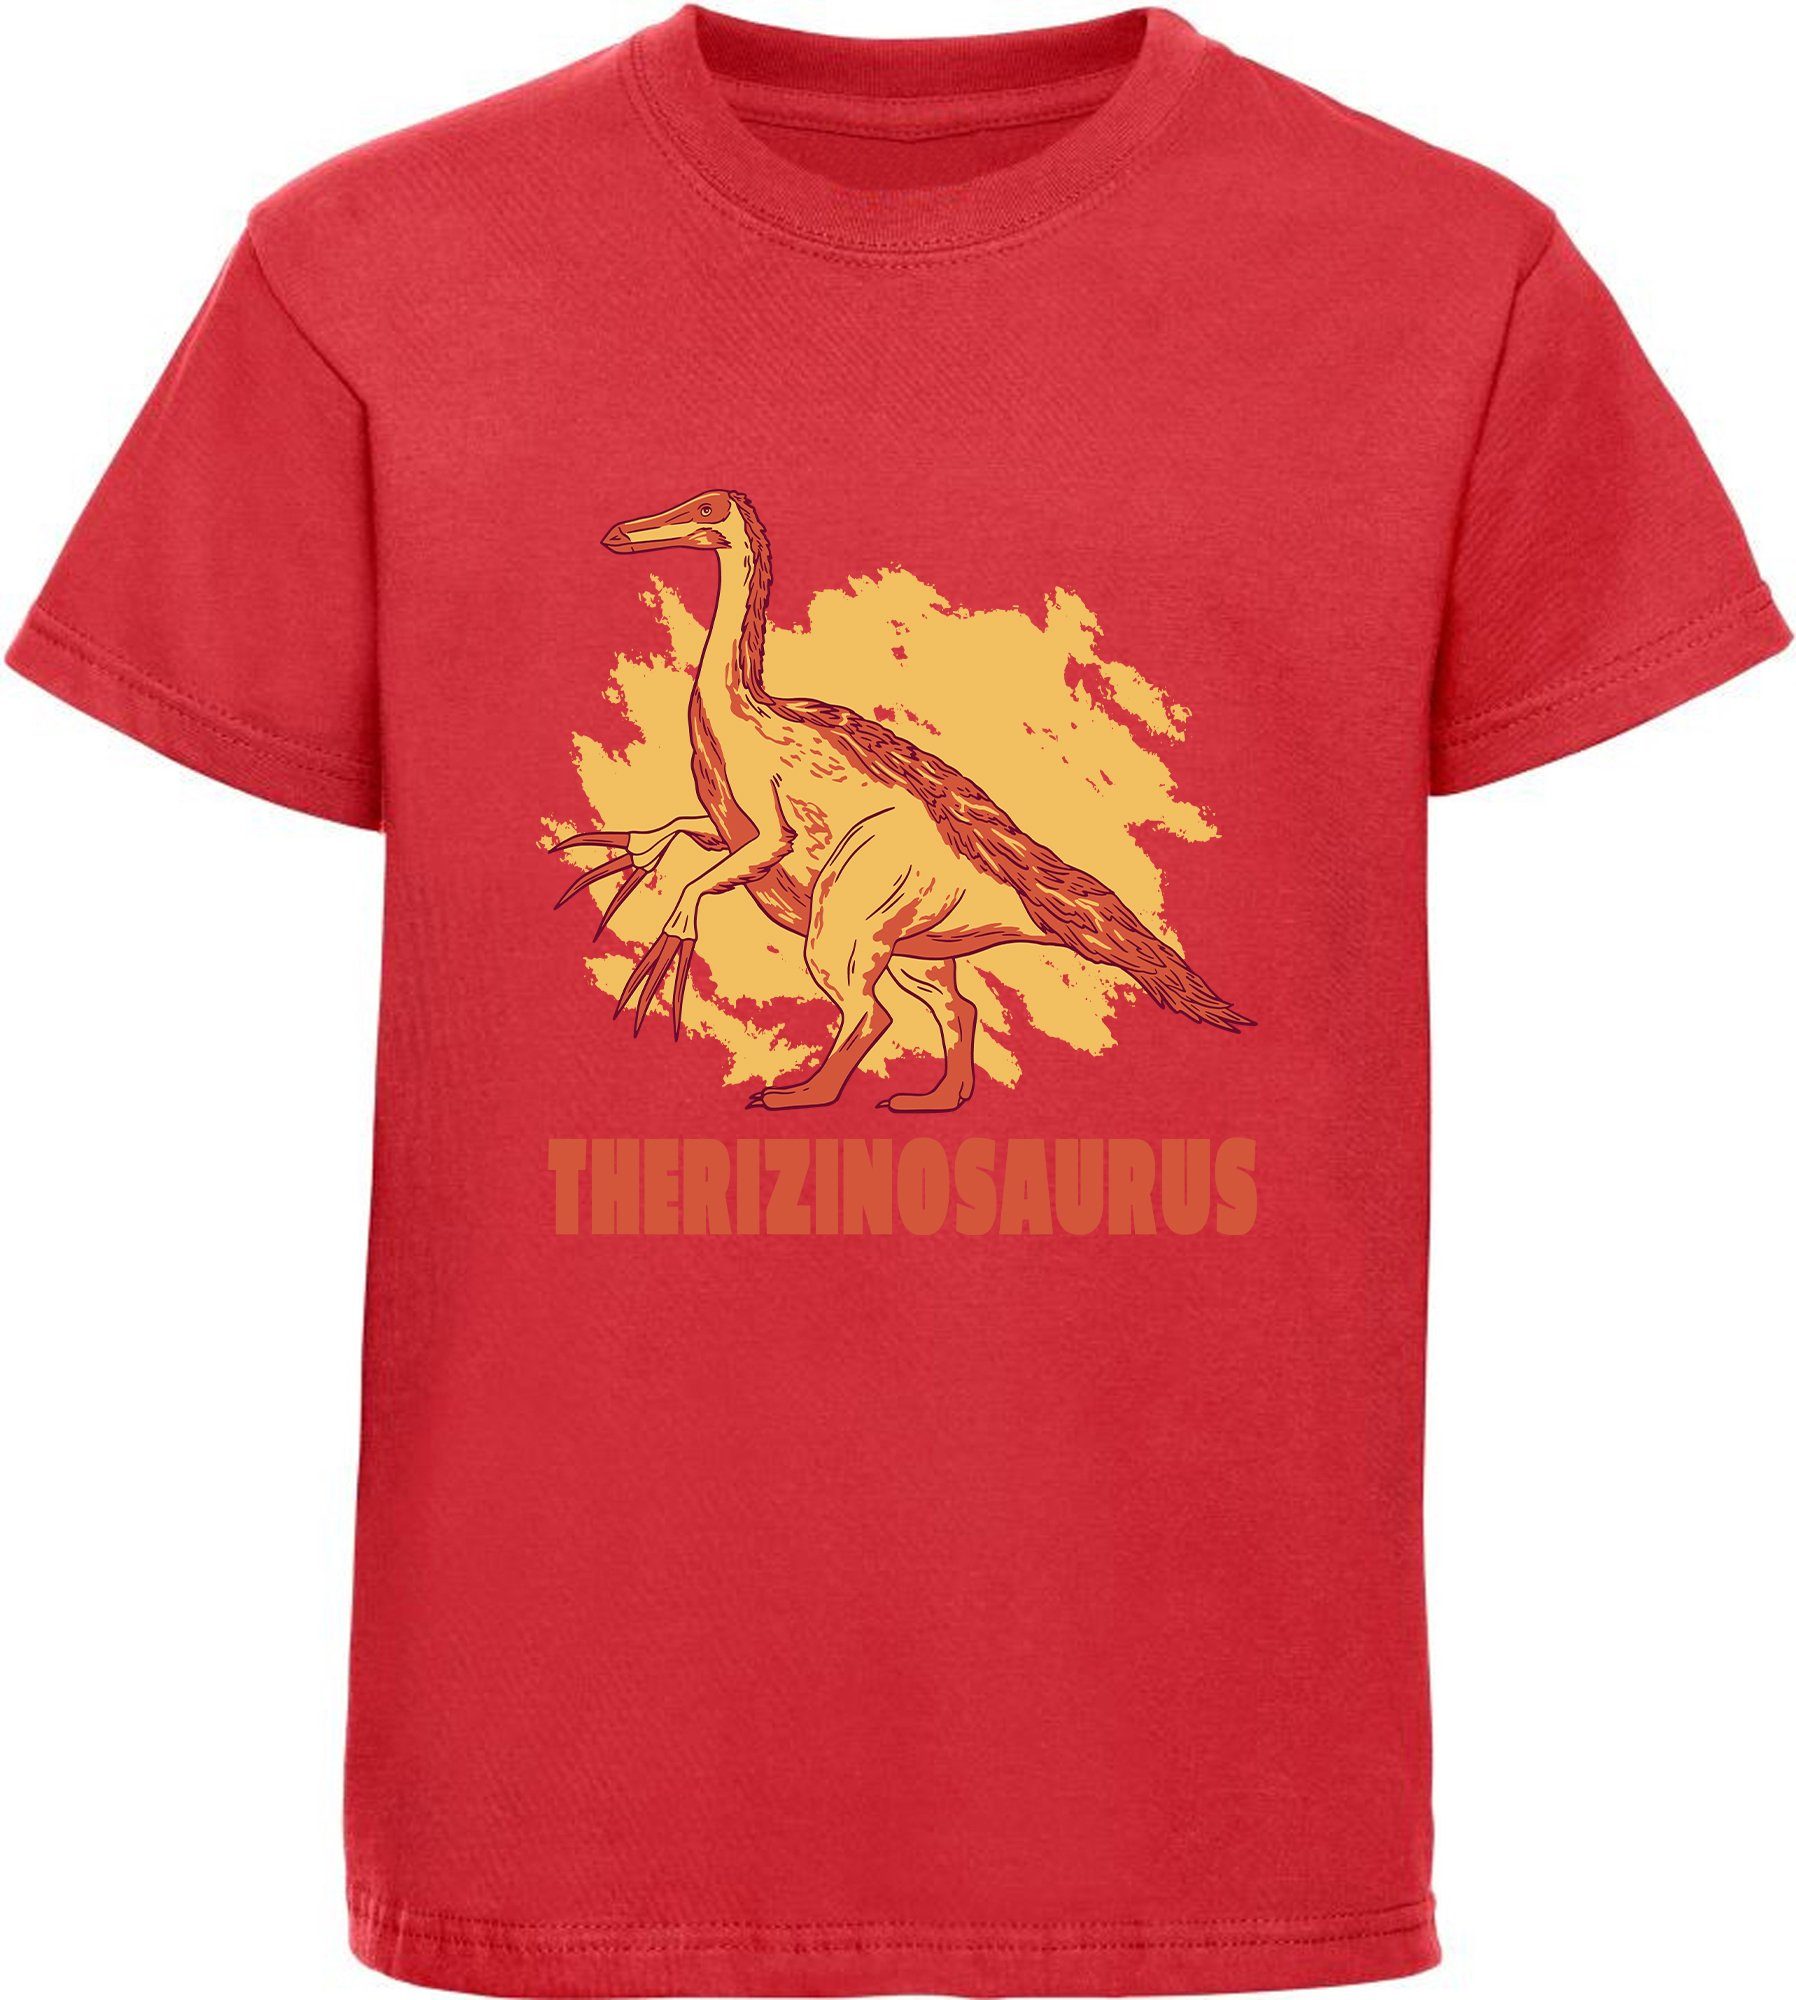 blau, rot, MyDesign24 schwarz, Kinder mit Baumwollshirt T-Shirt Dino, weiß, mit Therizinosaurus i87 bedrucktes Print-Shirt